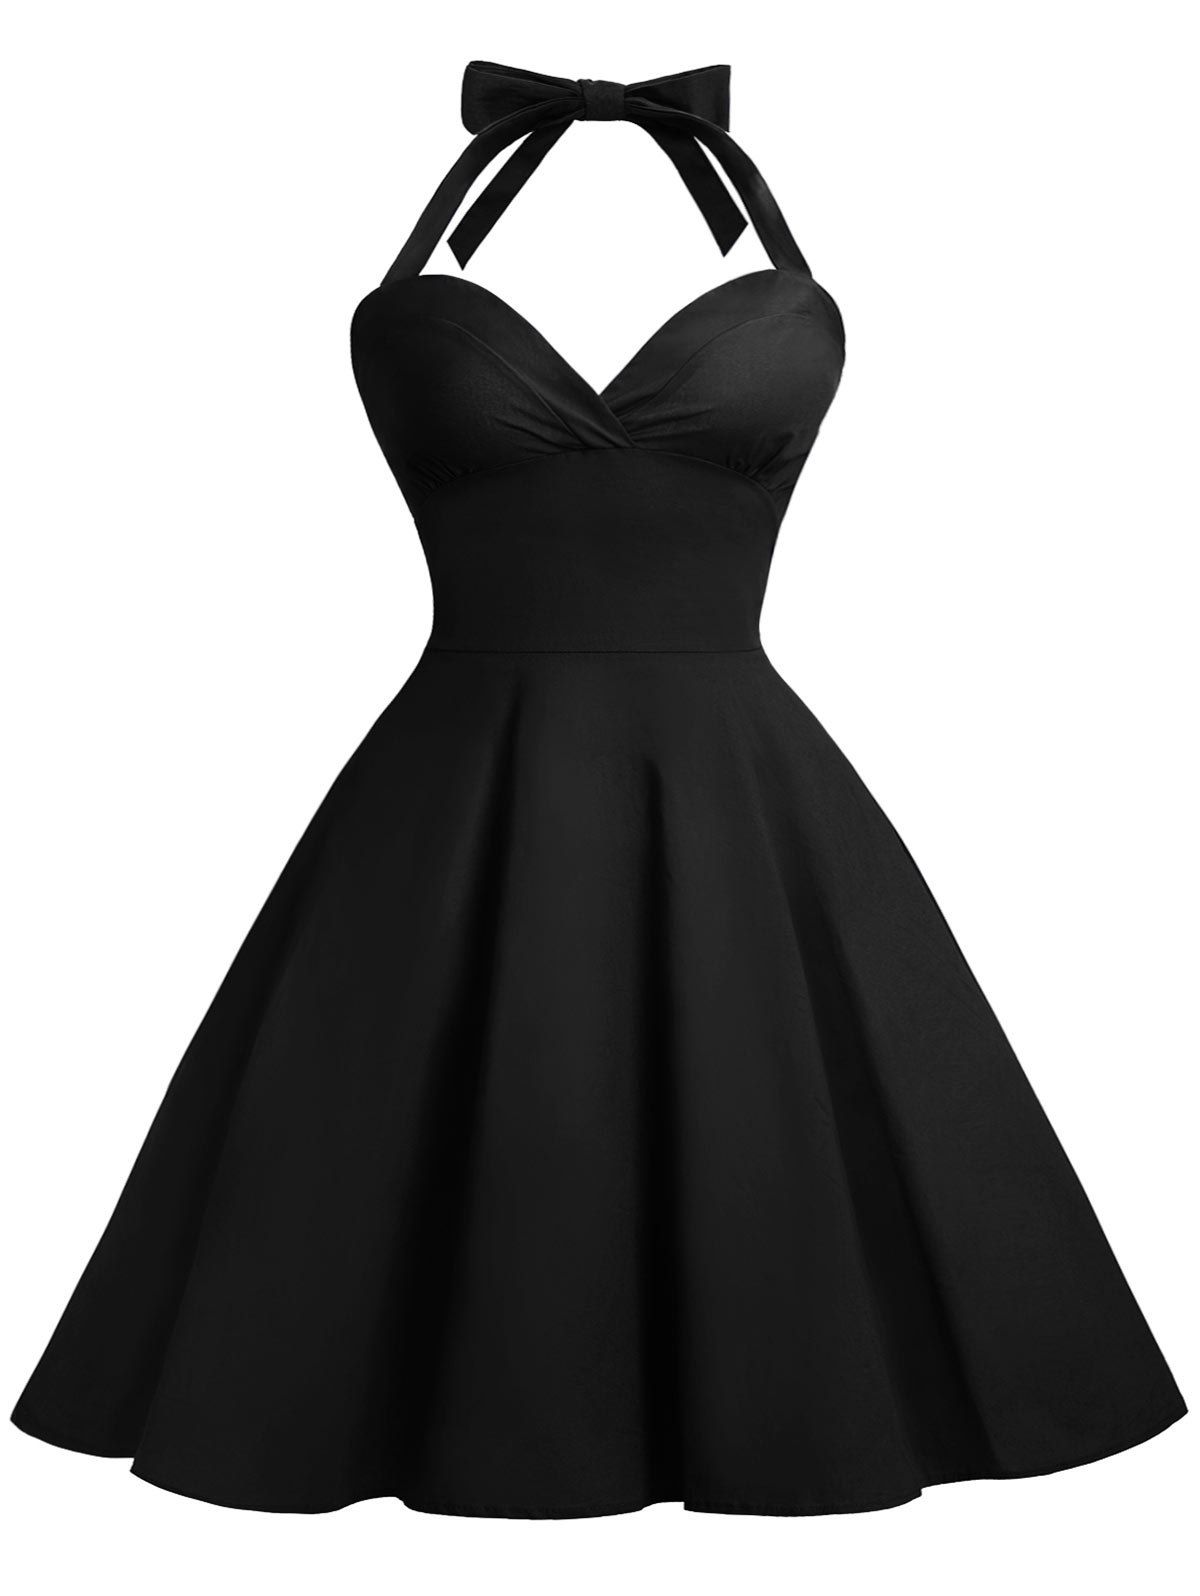 Halter Vintage A Line Dress - BLACK L